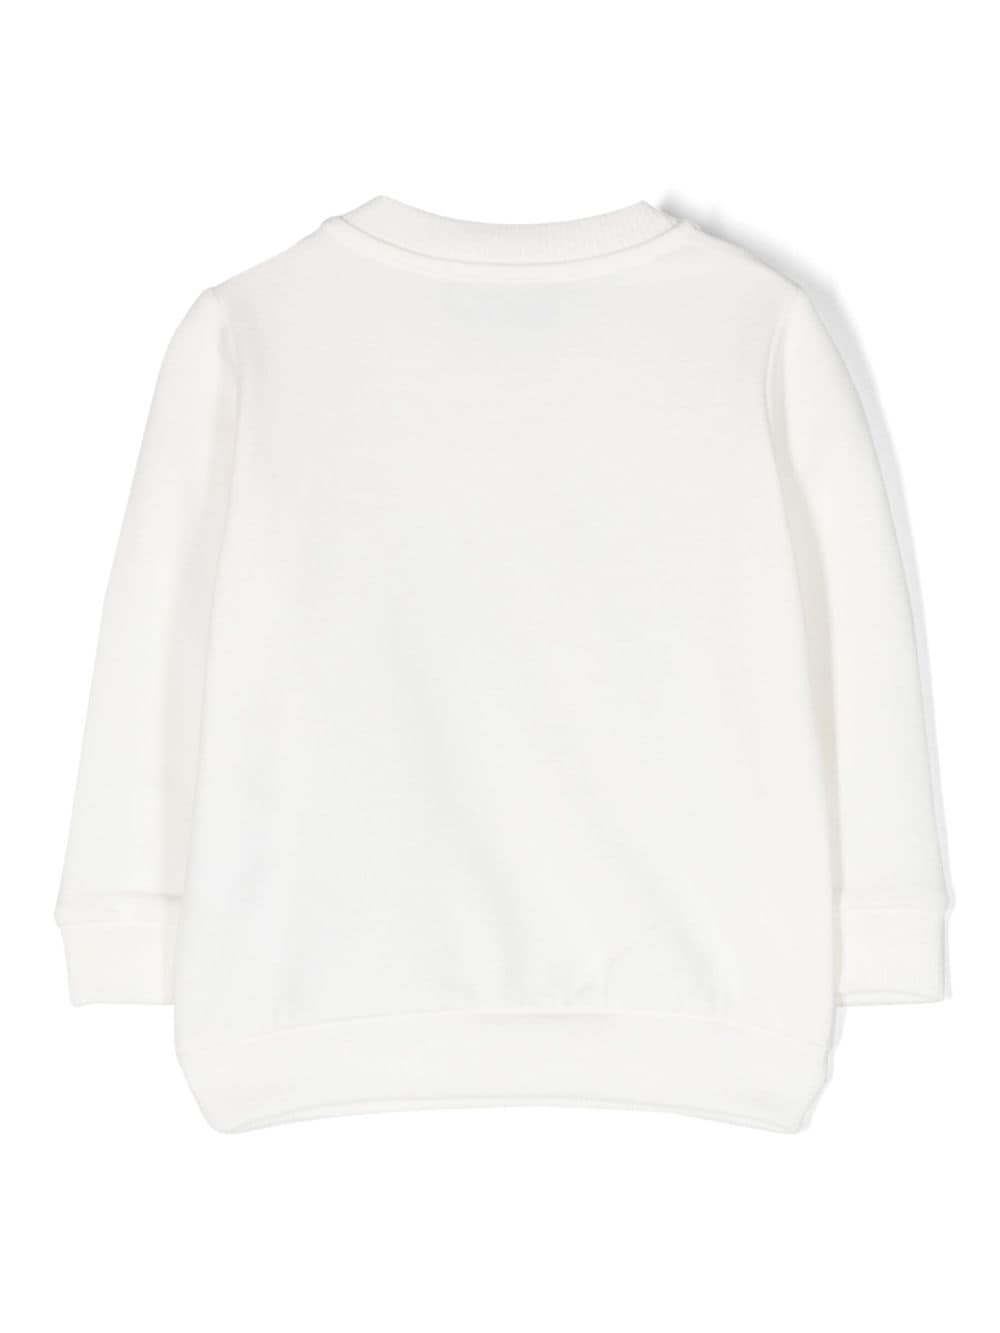 T-shirt unisexe blanc laiteux avec imprimé